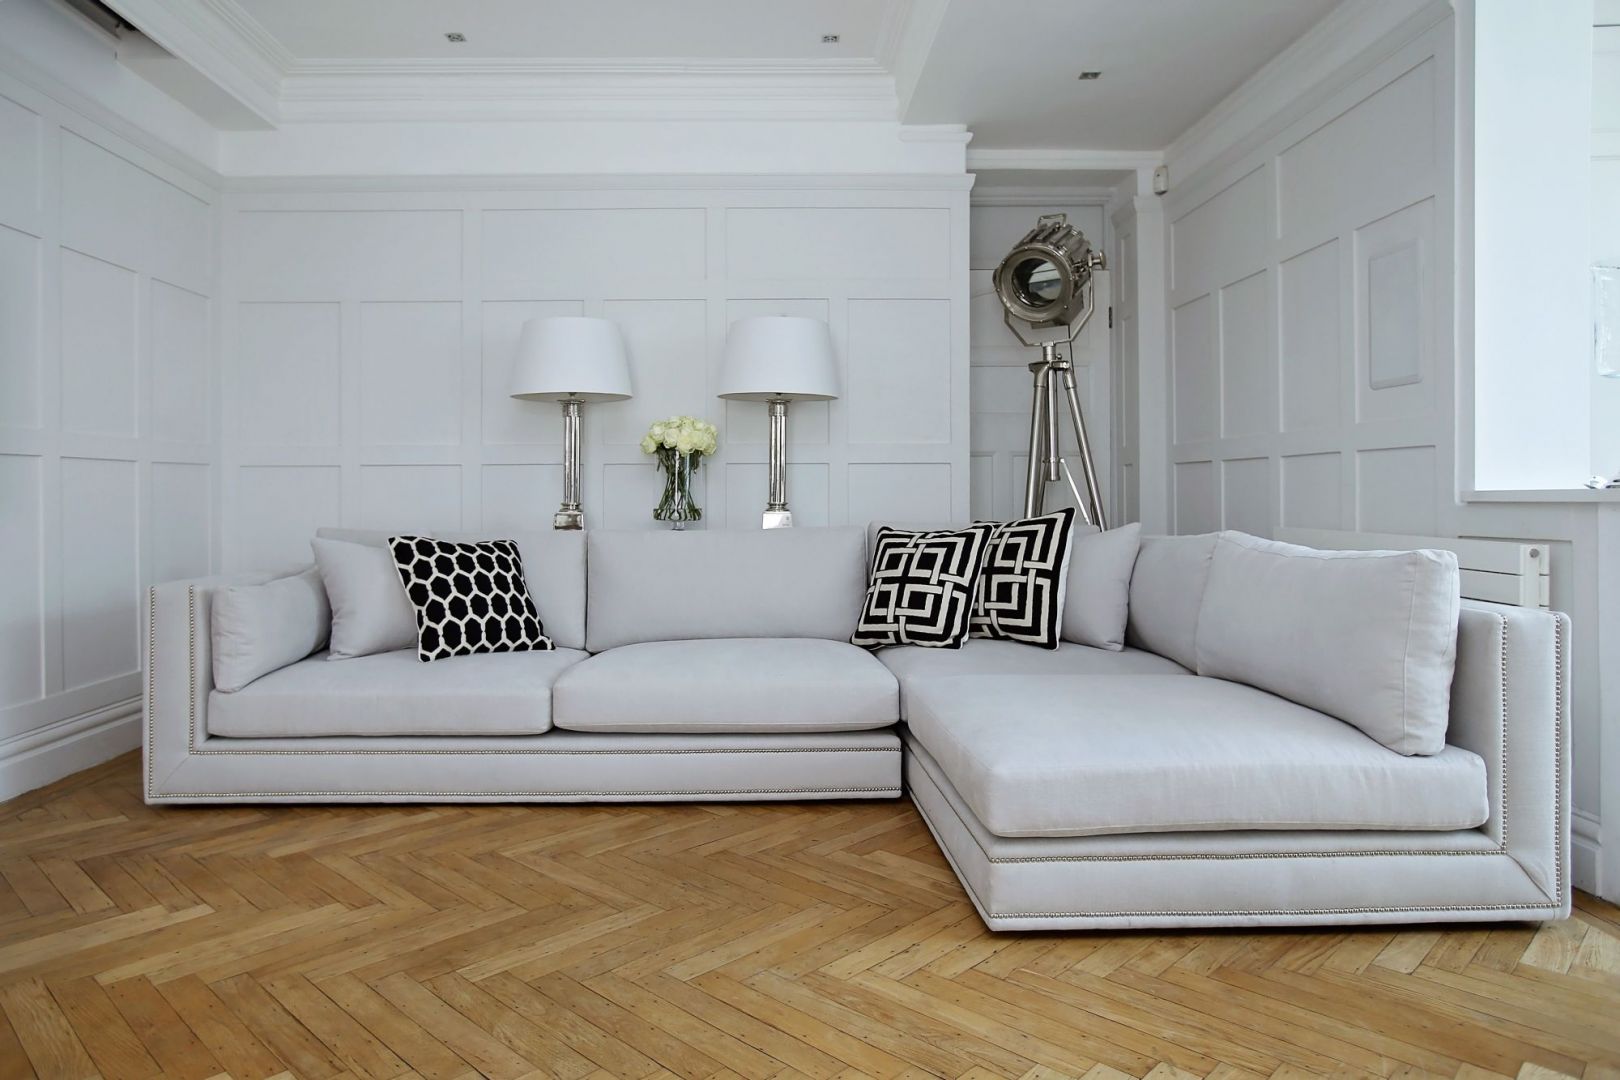 Sofa Bancroft zwraca uwagę dekoracyjnym elementem, który pięknie podkreśla bryłę mebla. Fot. Sweetpea & Willow 